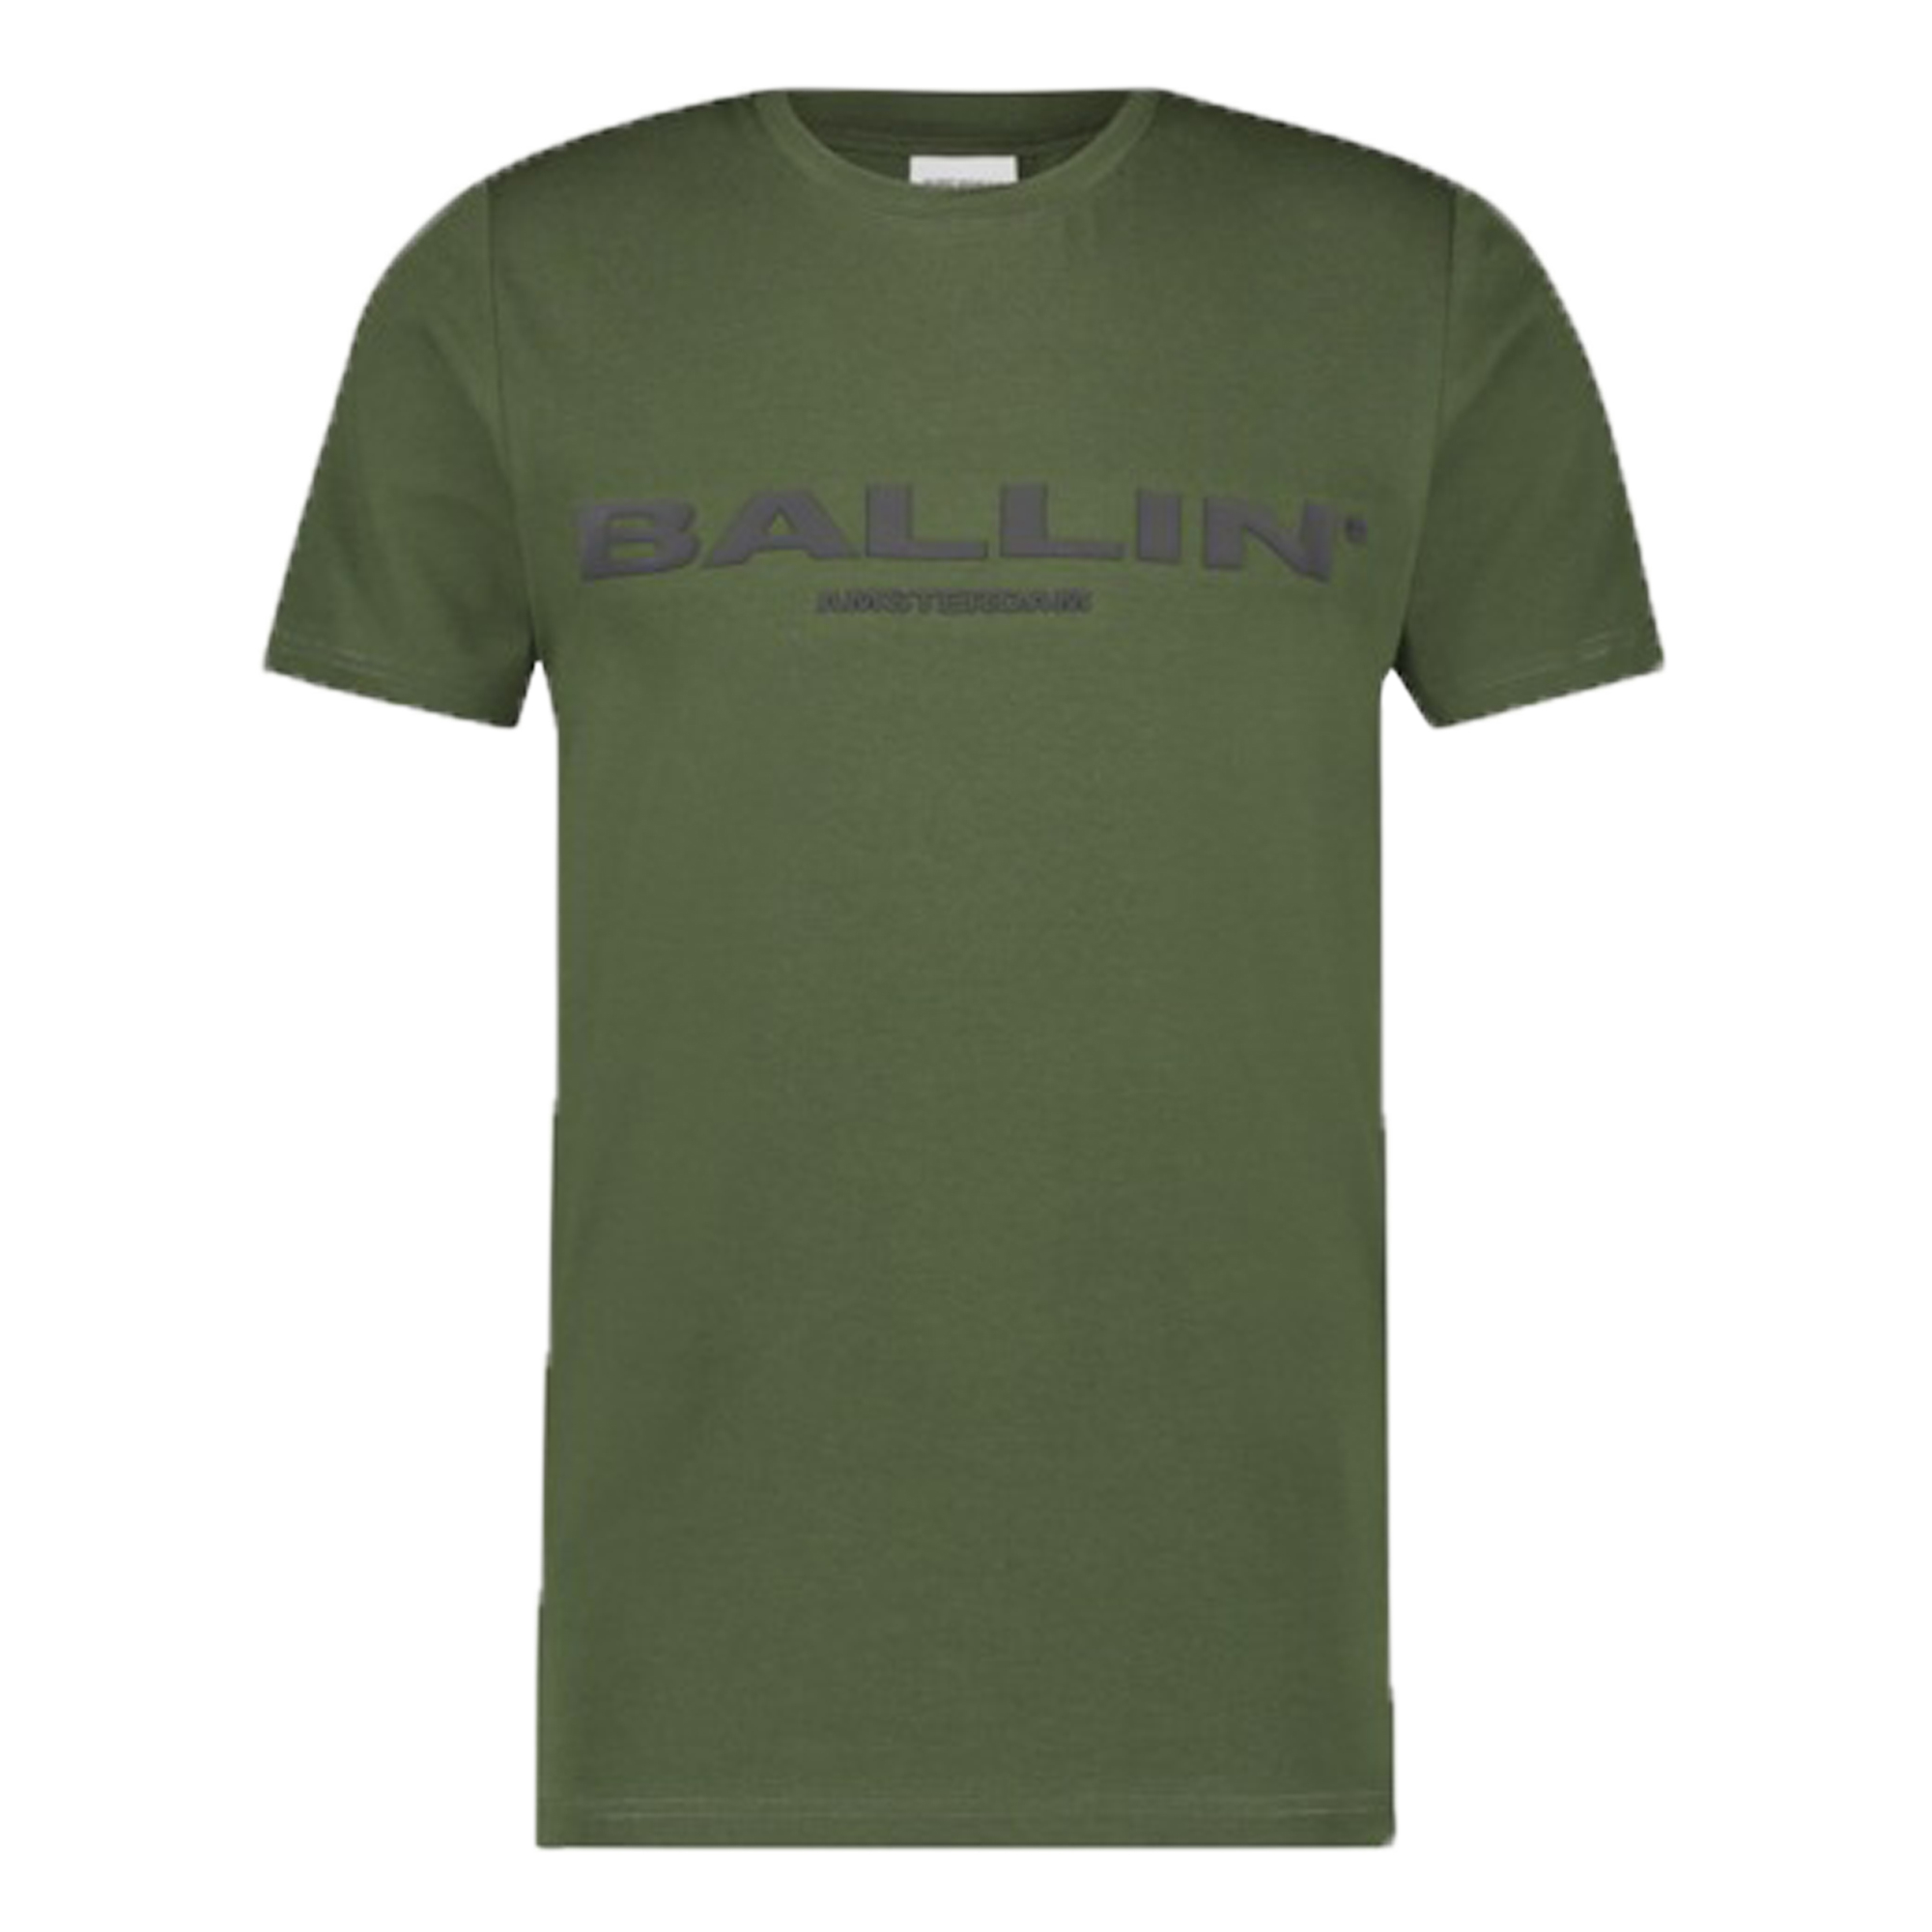 T-shirt Ballin Original Logo